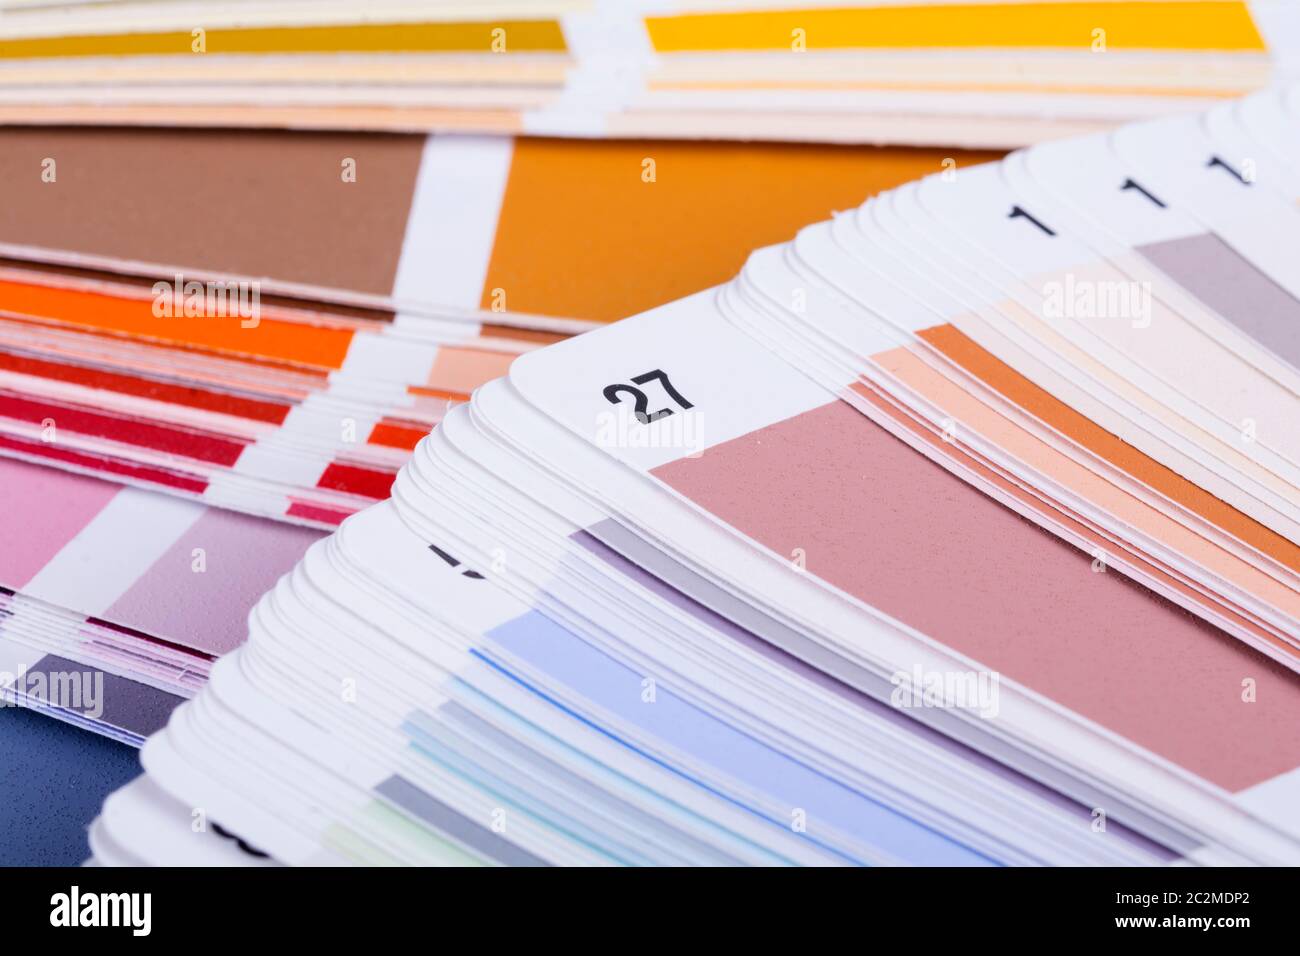 Colores arcoiris en una tabla cmyk Foto de stock